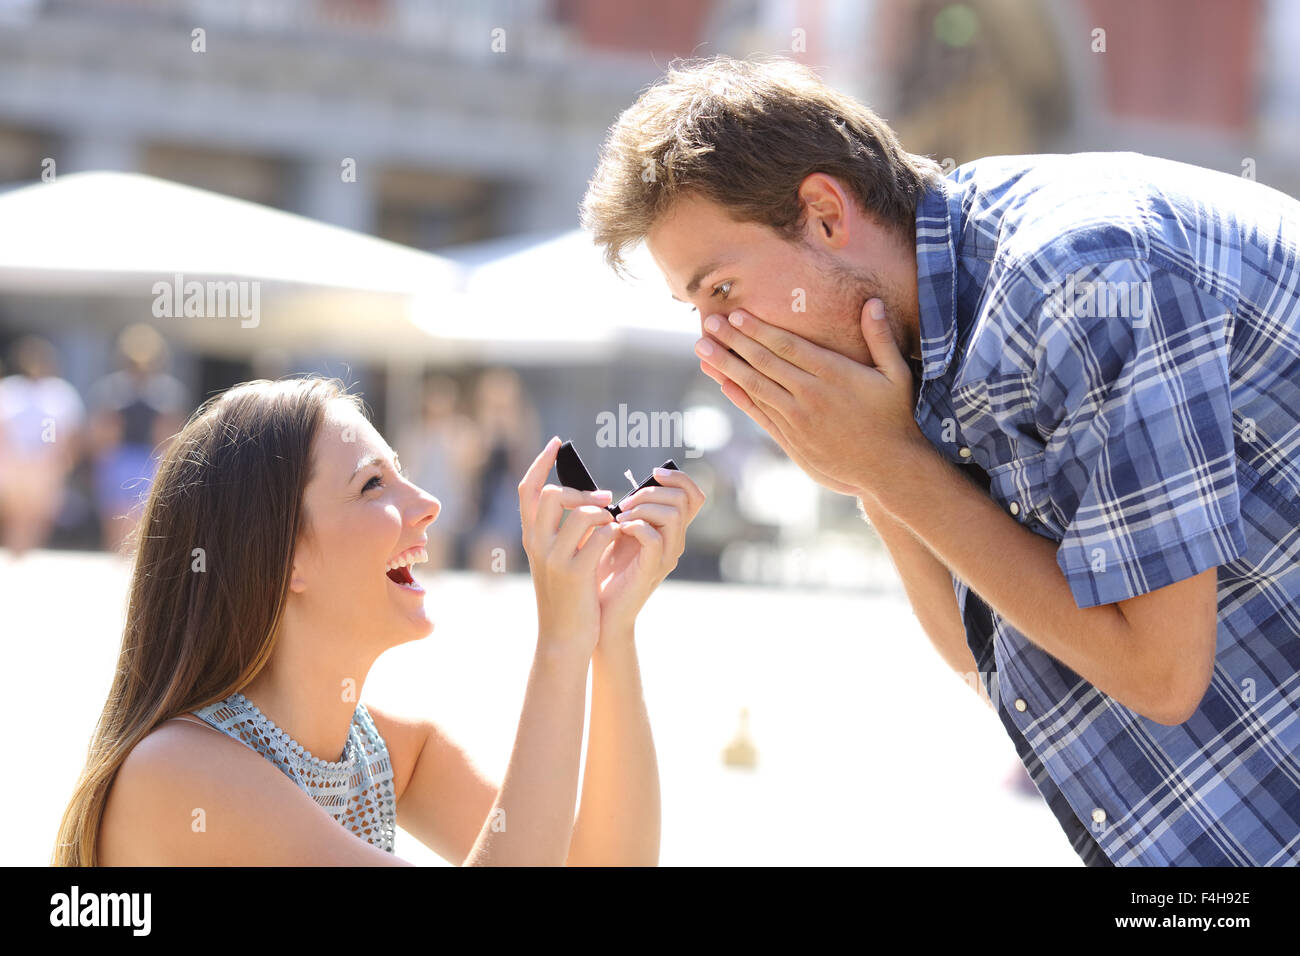 Vorschlag von einer Frau mit einem Mann in der Mitte einer Straße zu heiraten Stockfoto